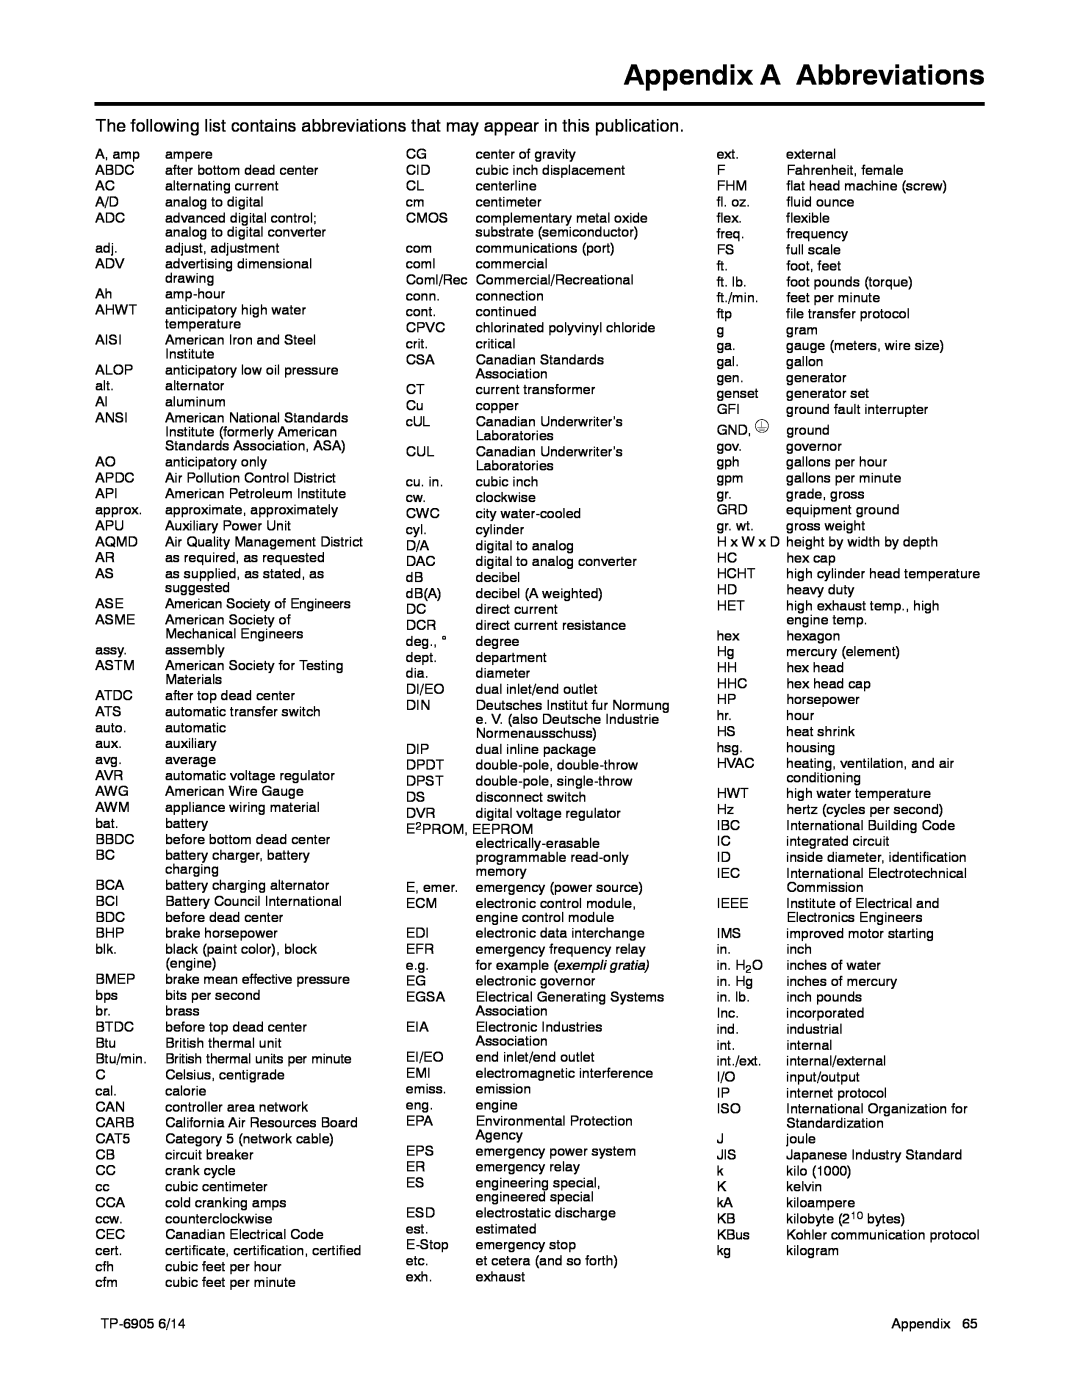 Kohler 24RCL manual Appendix A Abbreviations, for example exempli gratia 